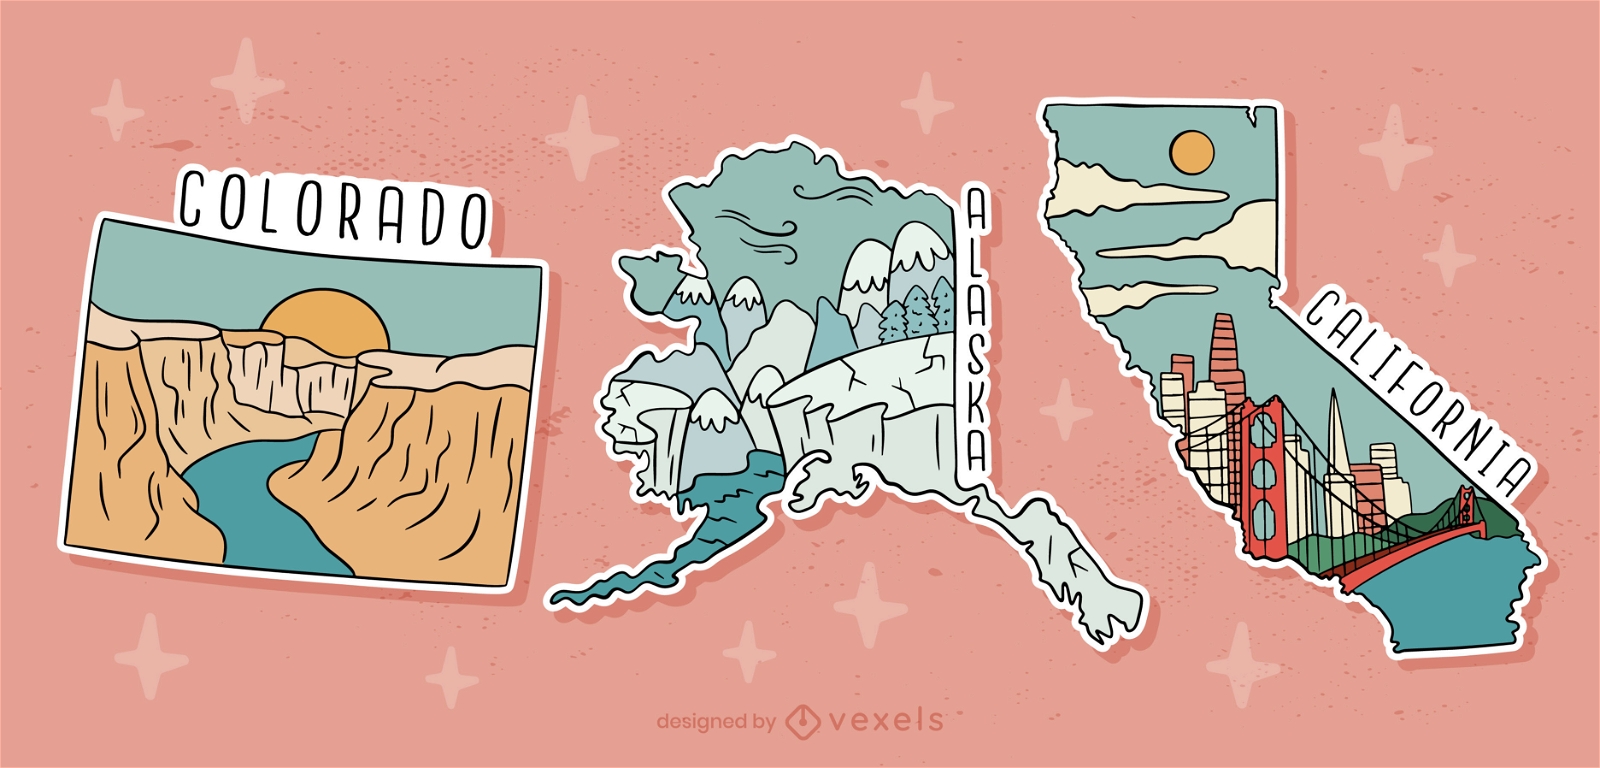 USA states landscapes postcard set